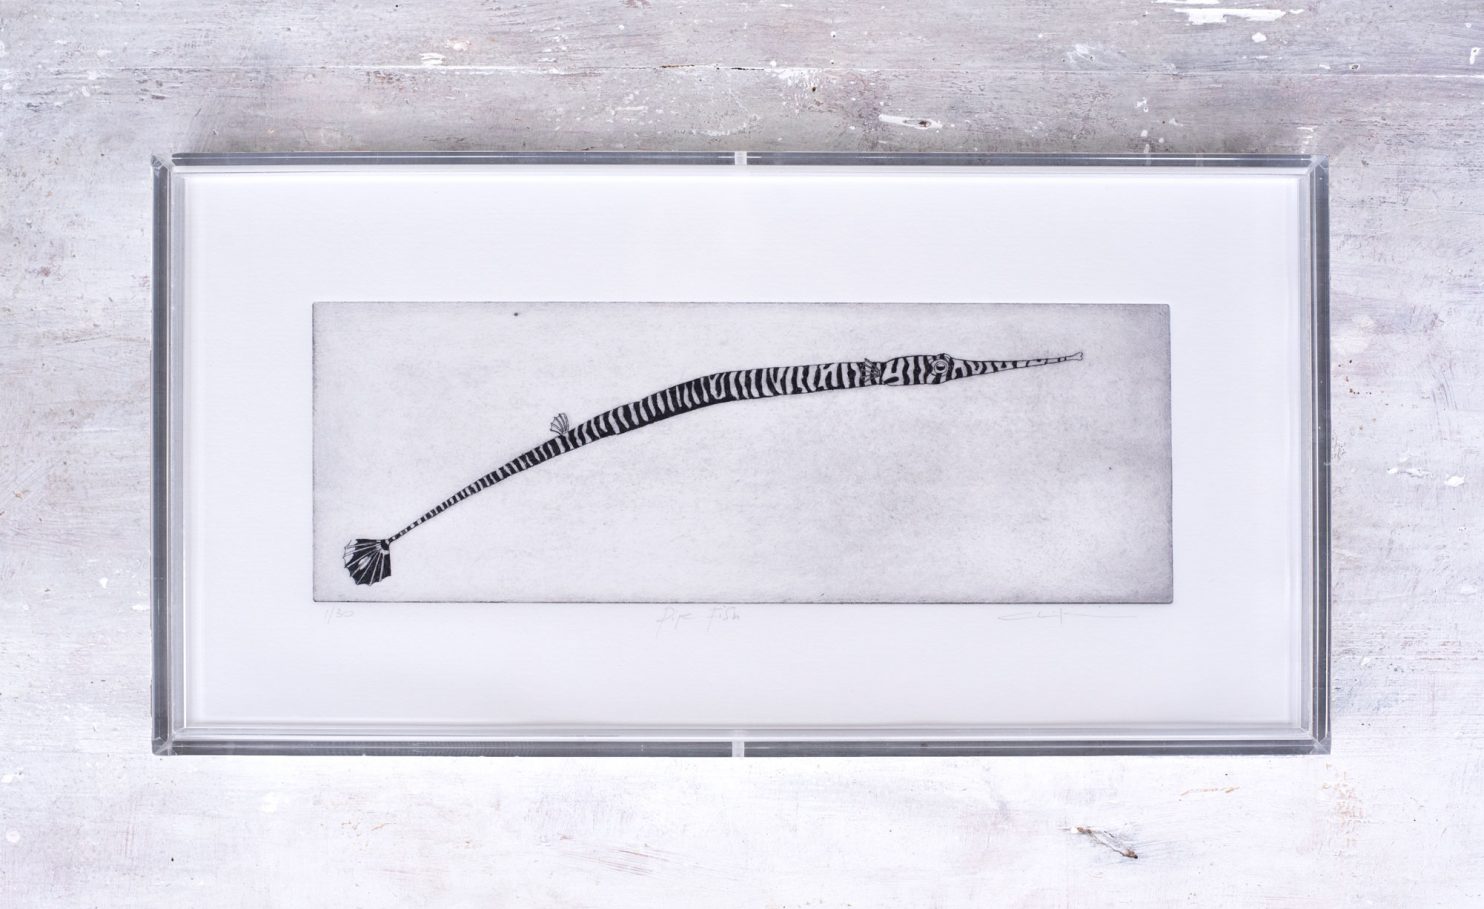 Zanin Alice, Pipe Fish, 2022, acquaforte su carta Fabriano 225 g, plexiglass, 17,6x34,6x3,5 cm, Ed. 30 _Es 1 30